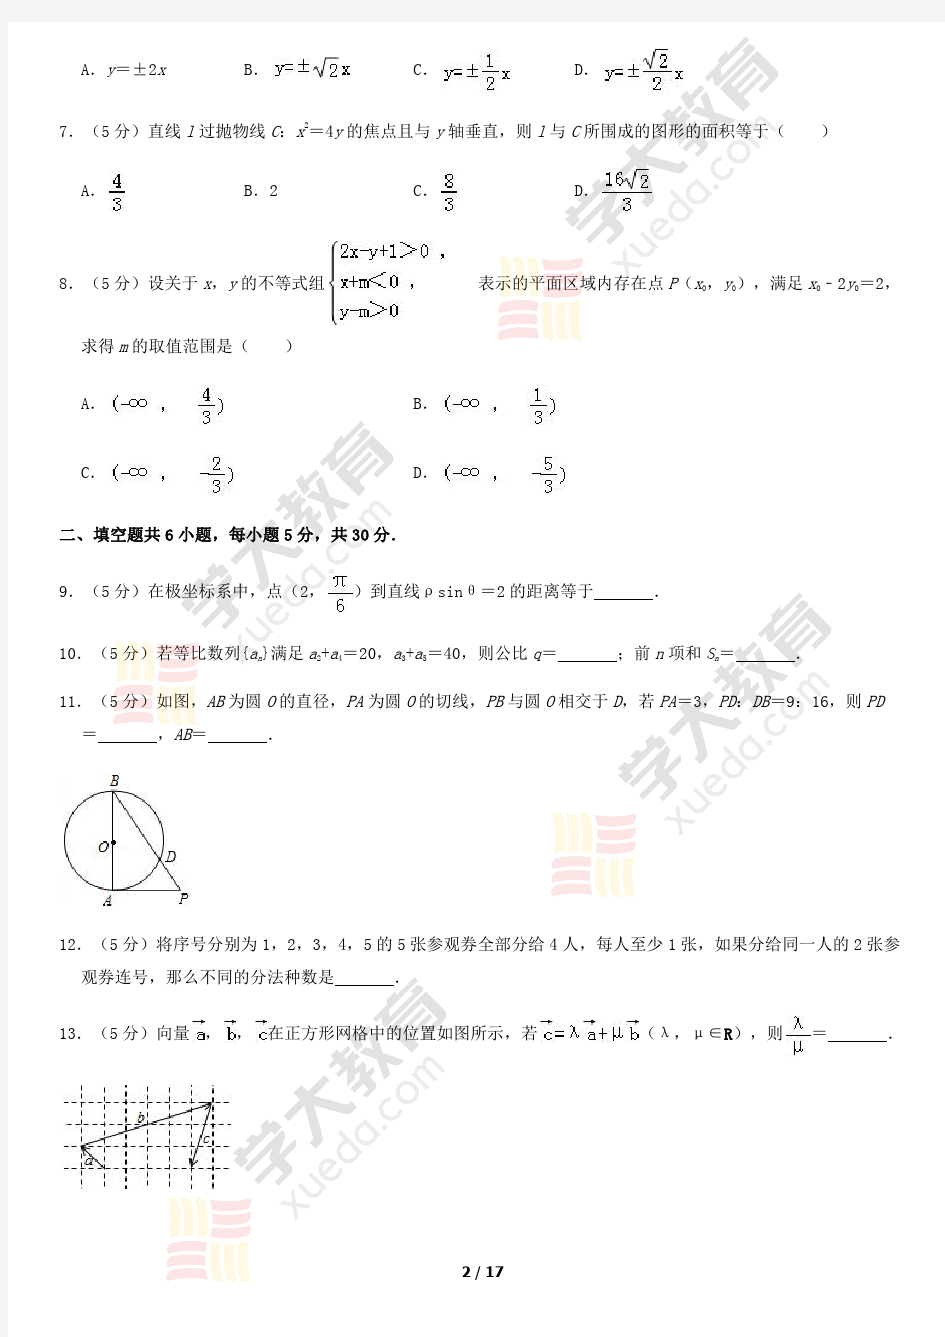 2013高考理科数学试题(北京)